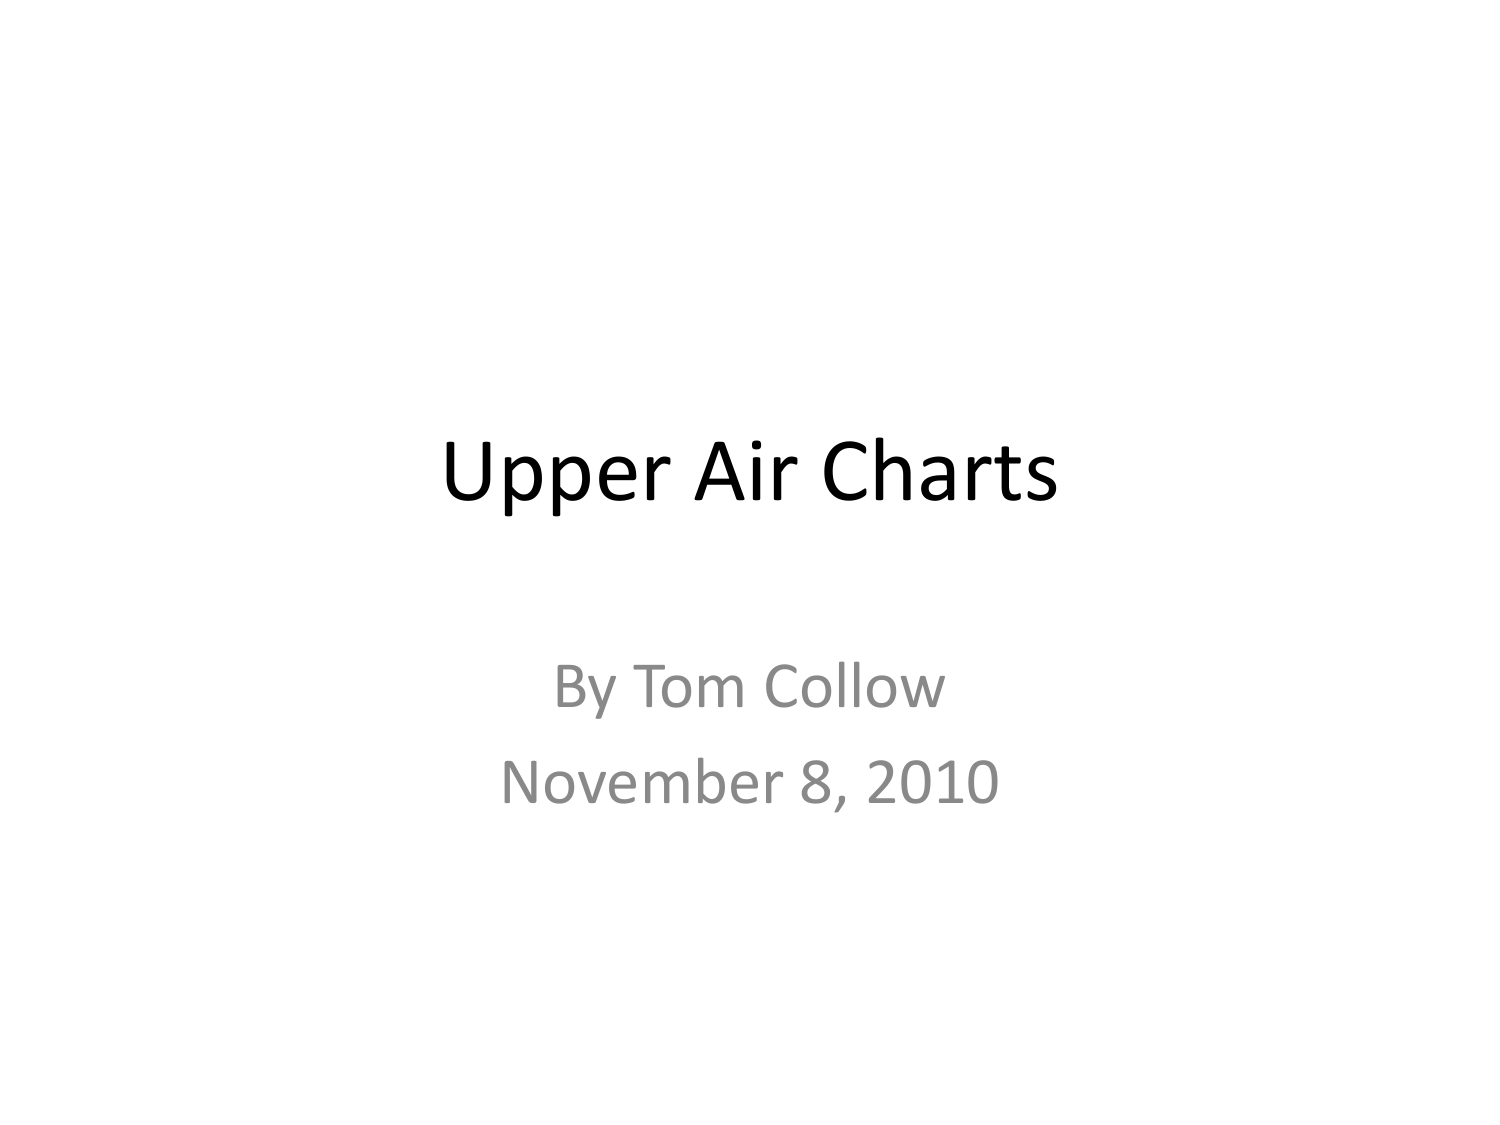 Upper Air Charts